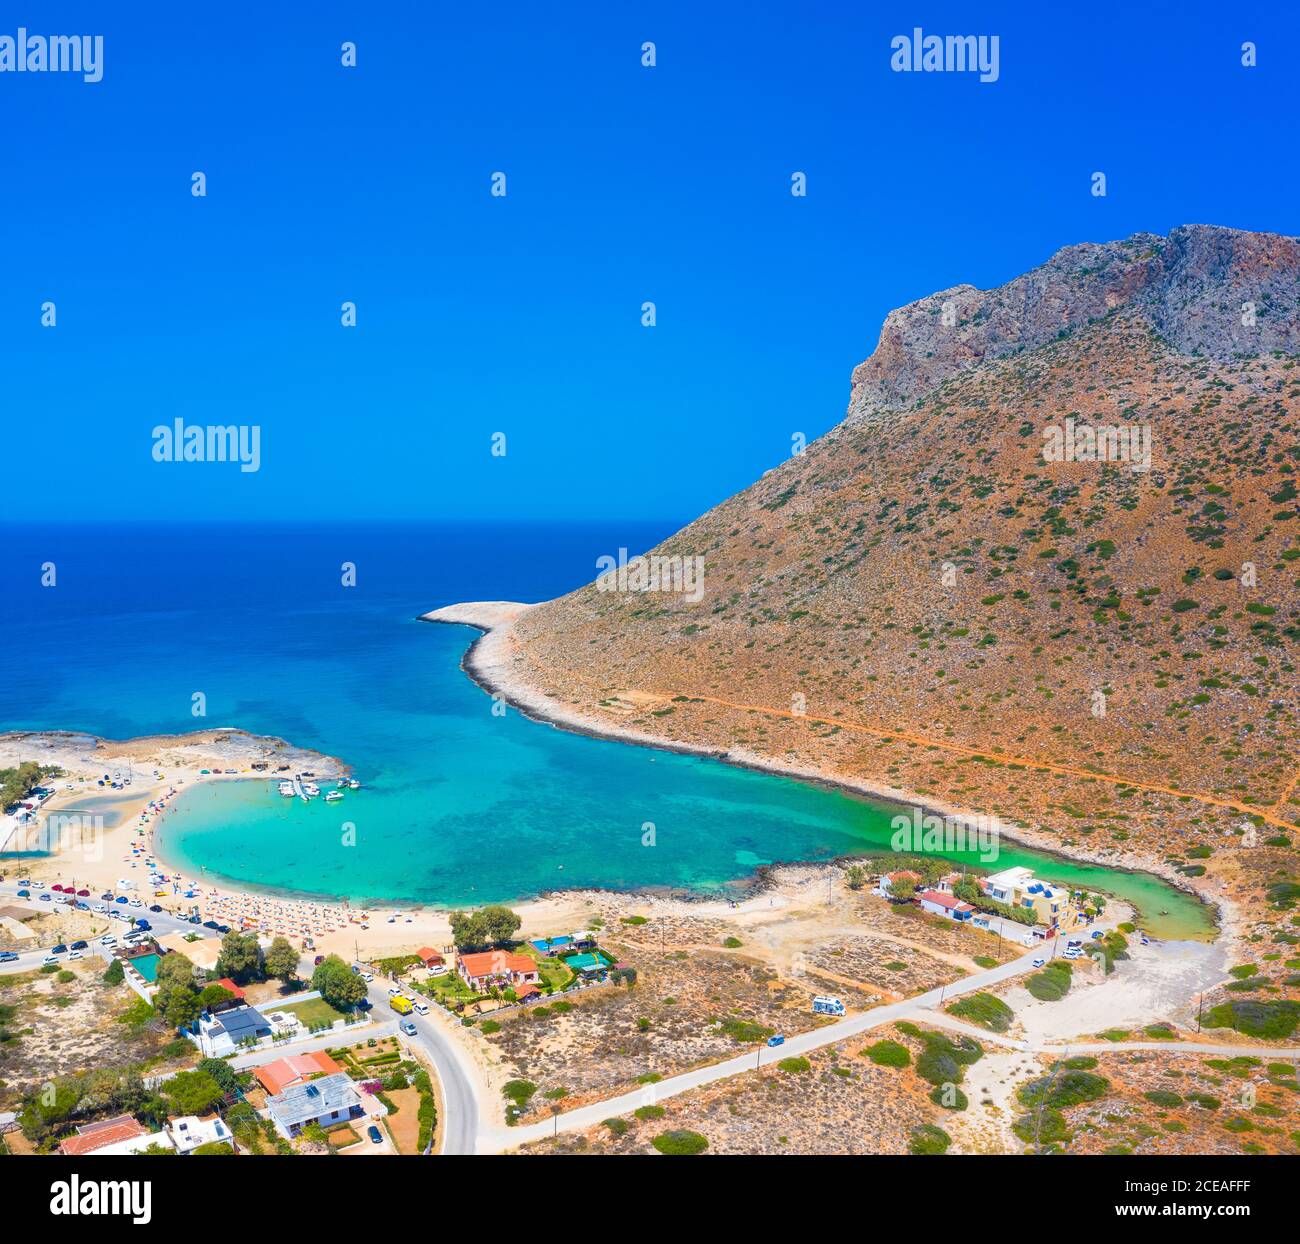 Superbe plage de sable de Stavros dans un lagon pittoresque, la Canée, la Crète, la Grèce. Banque D'Images